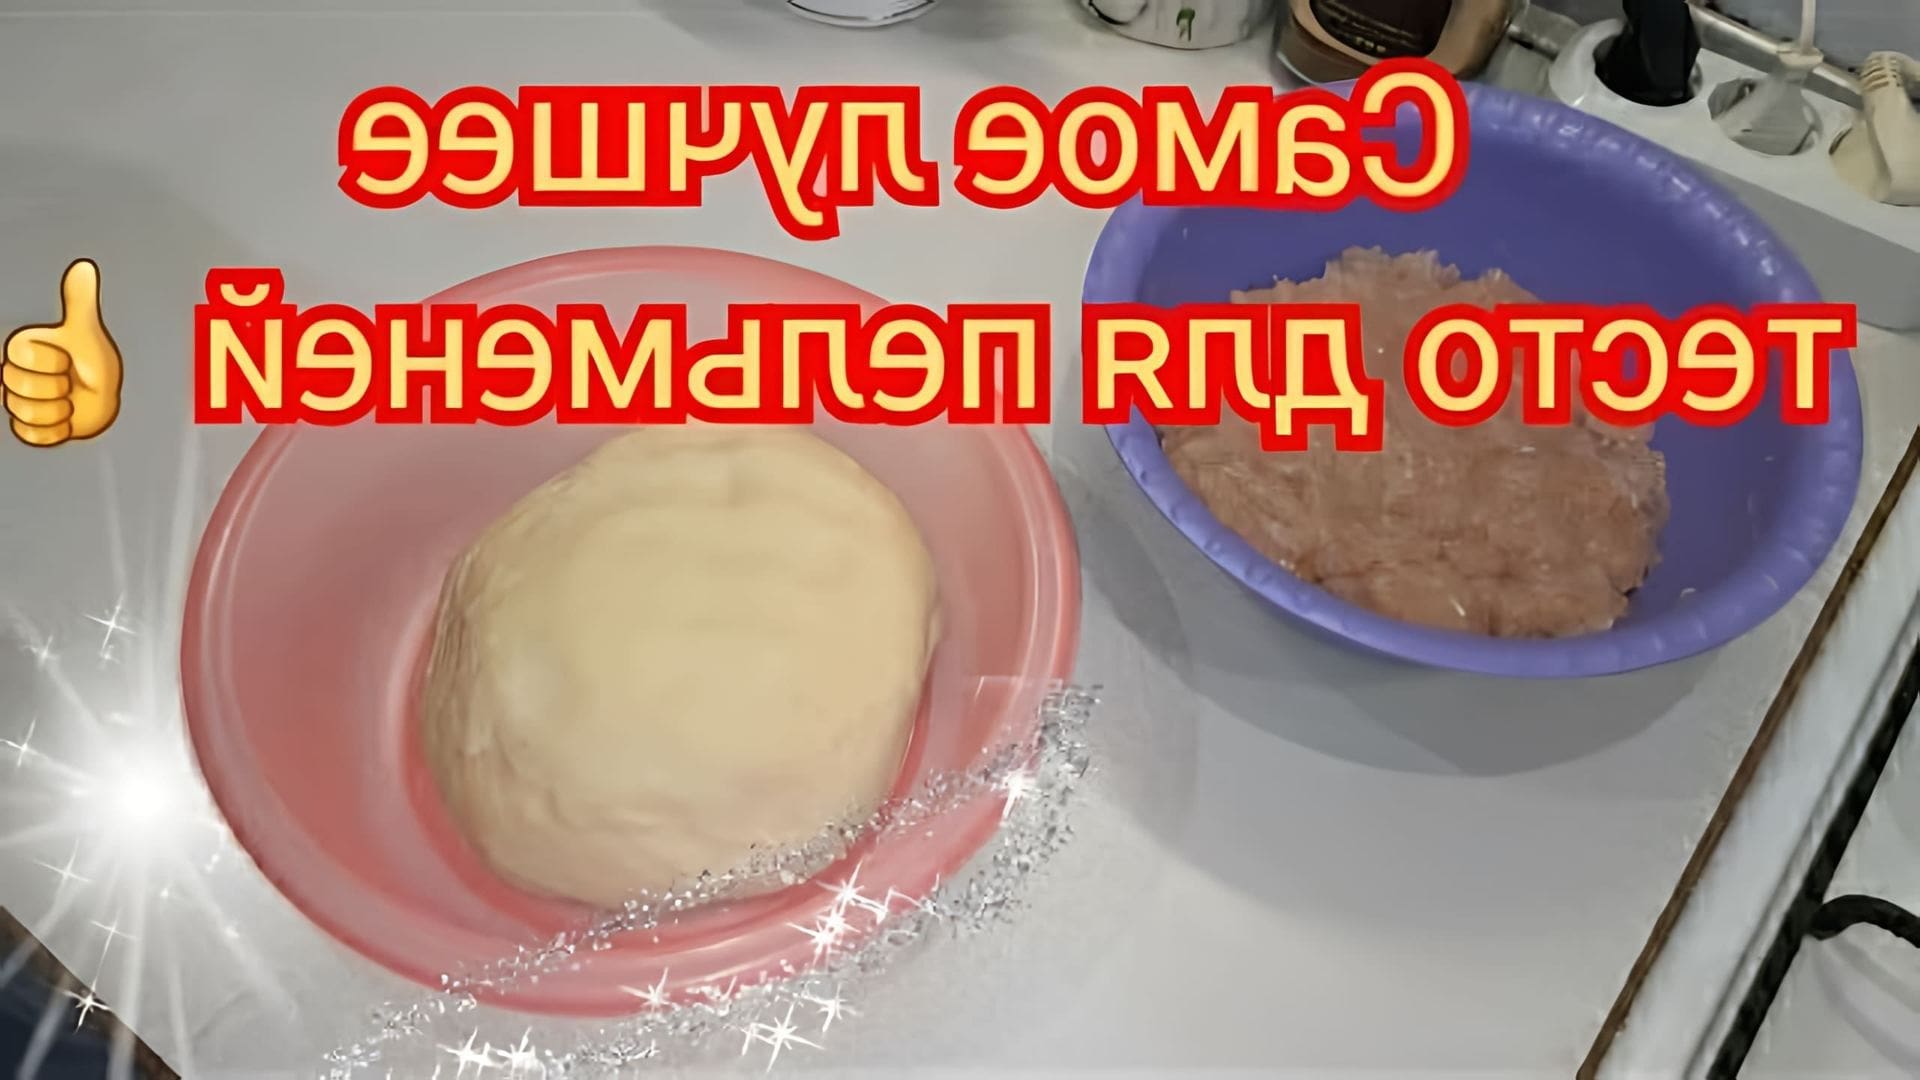 В этом видео Ольга показывает рецепт быстрого и легкого теста для пельменей и вареников